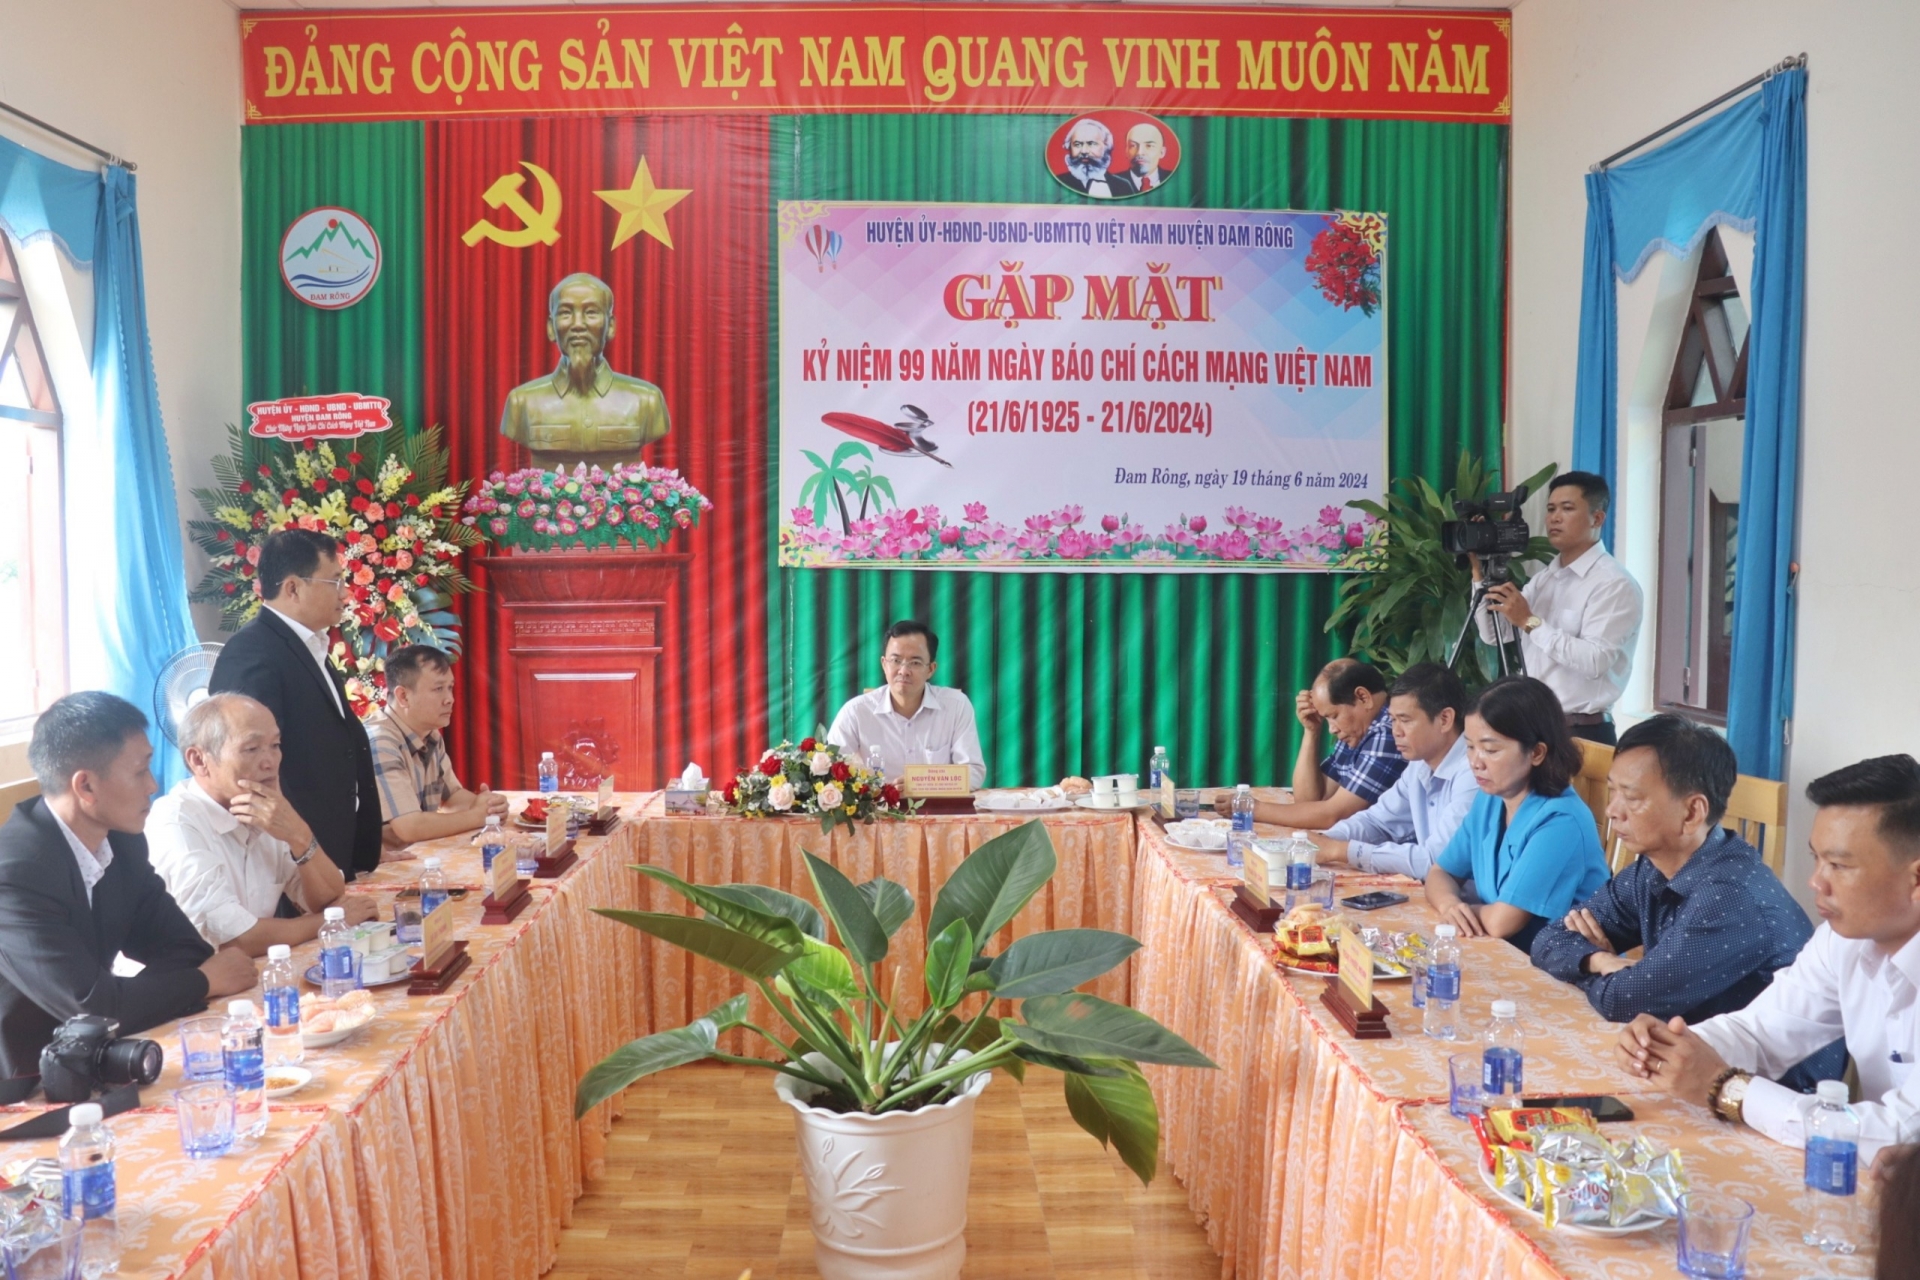 Đồng chí Dương Thái Hội - Giám đốc Trung tâm Văn hóa, Thông tin và Thể thao huyện phát biểu tại buổi gặp mặt  